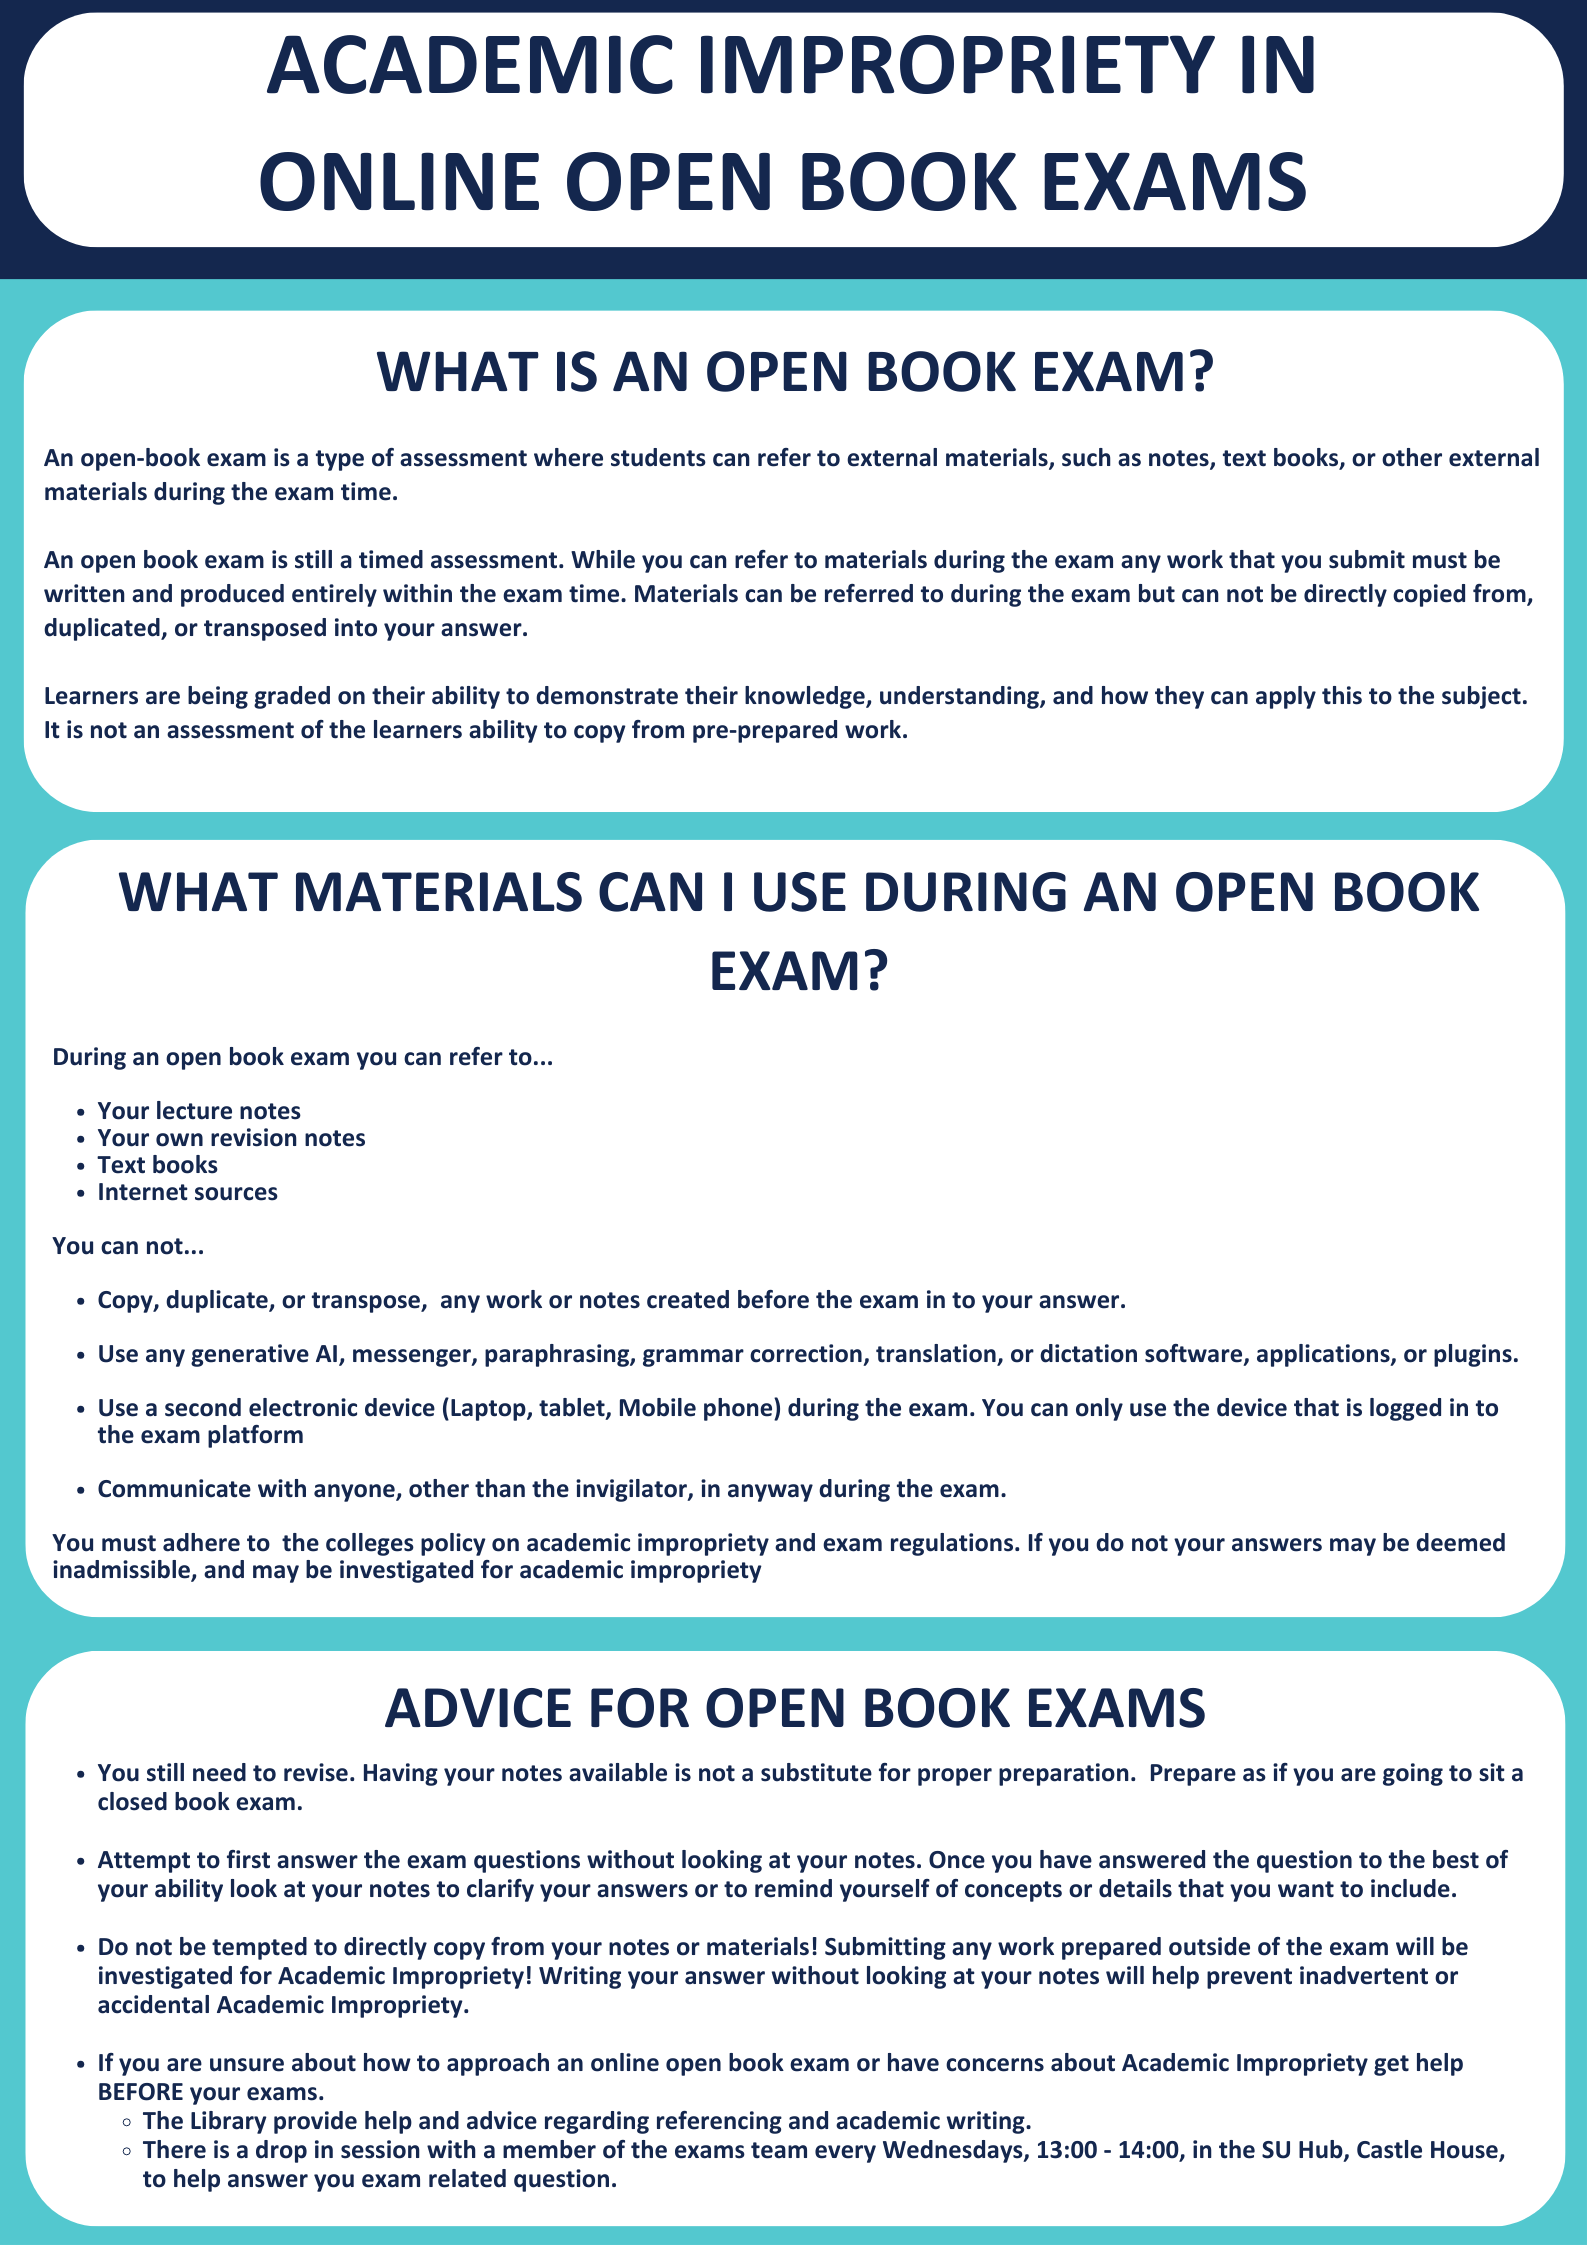 Open Book Exams and AI 1